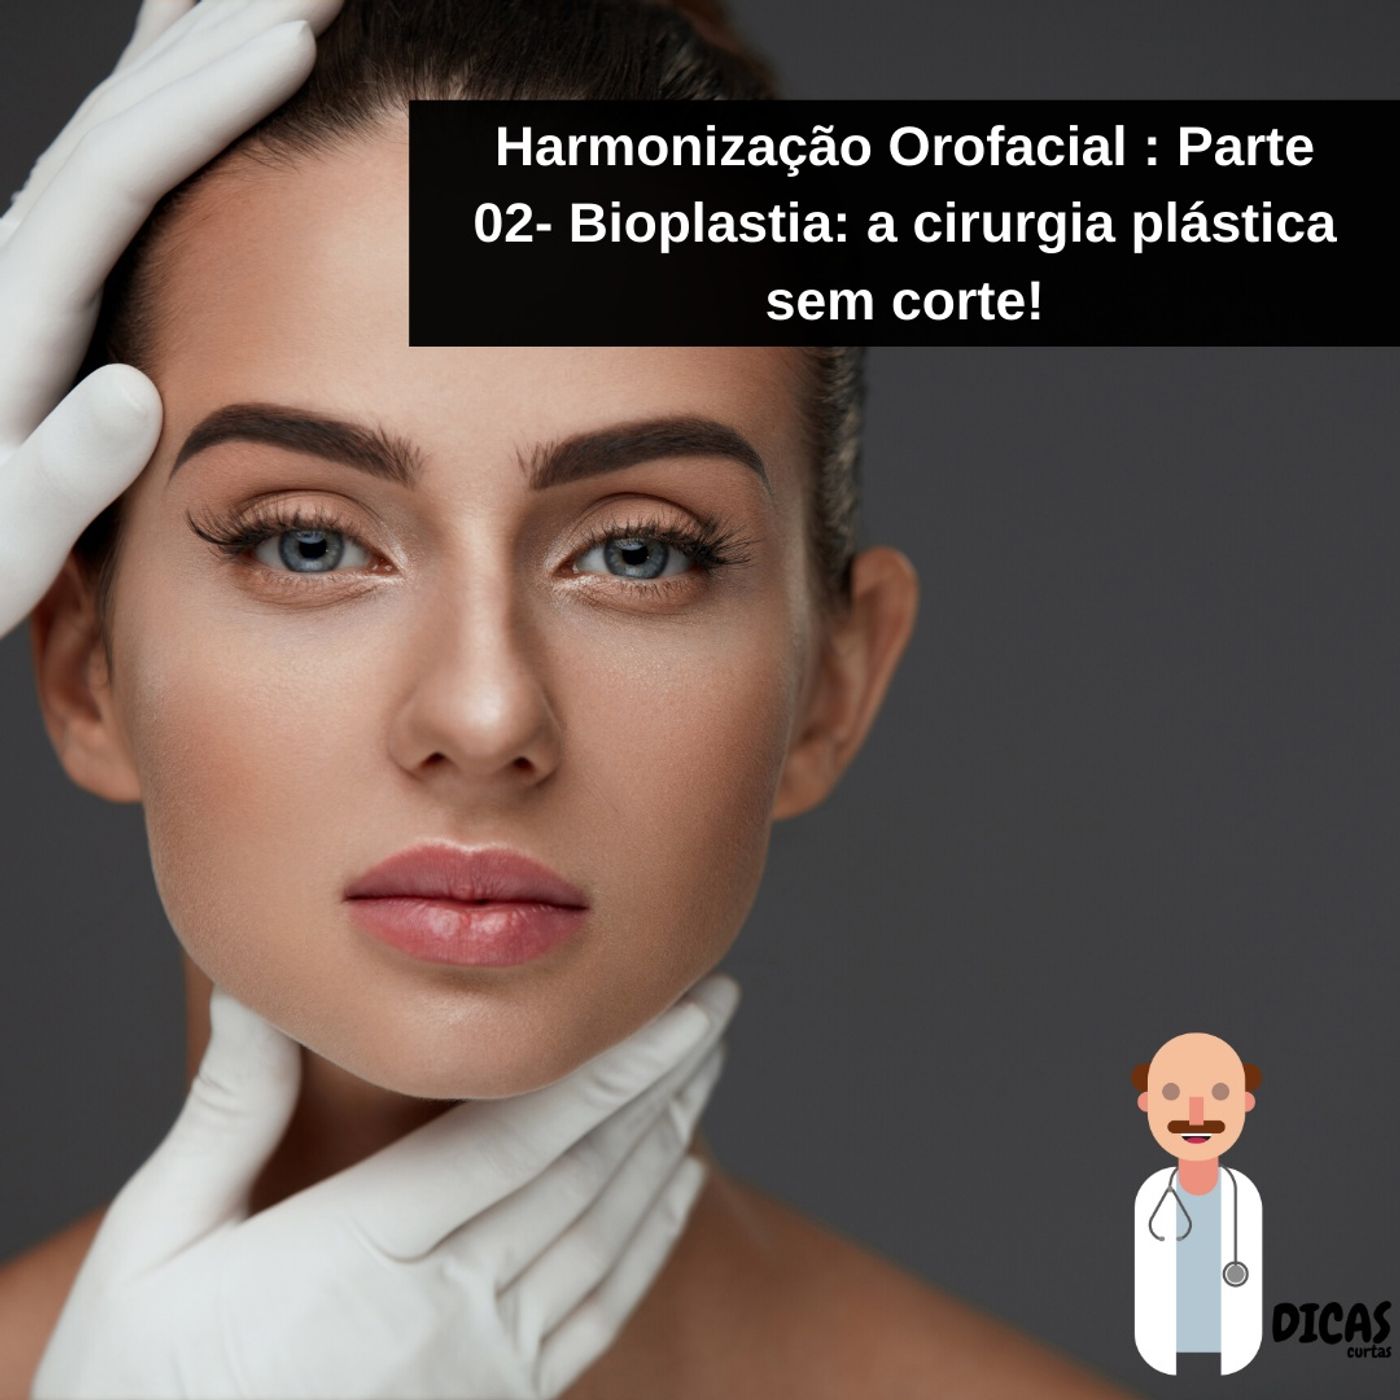 080 Harmonização Orofacial : Parte 02- Bioplastia: a cirurgia plástica sem corte!